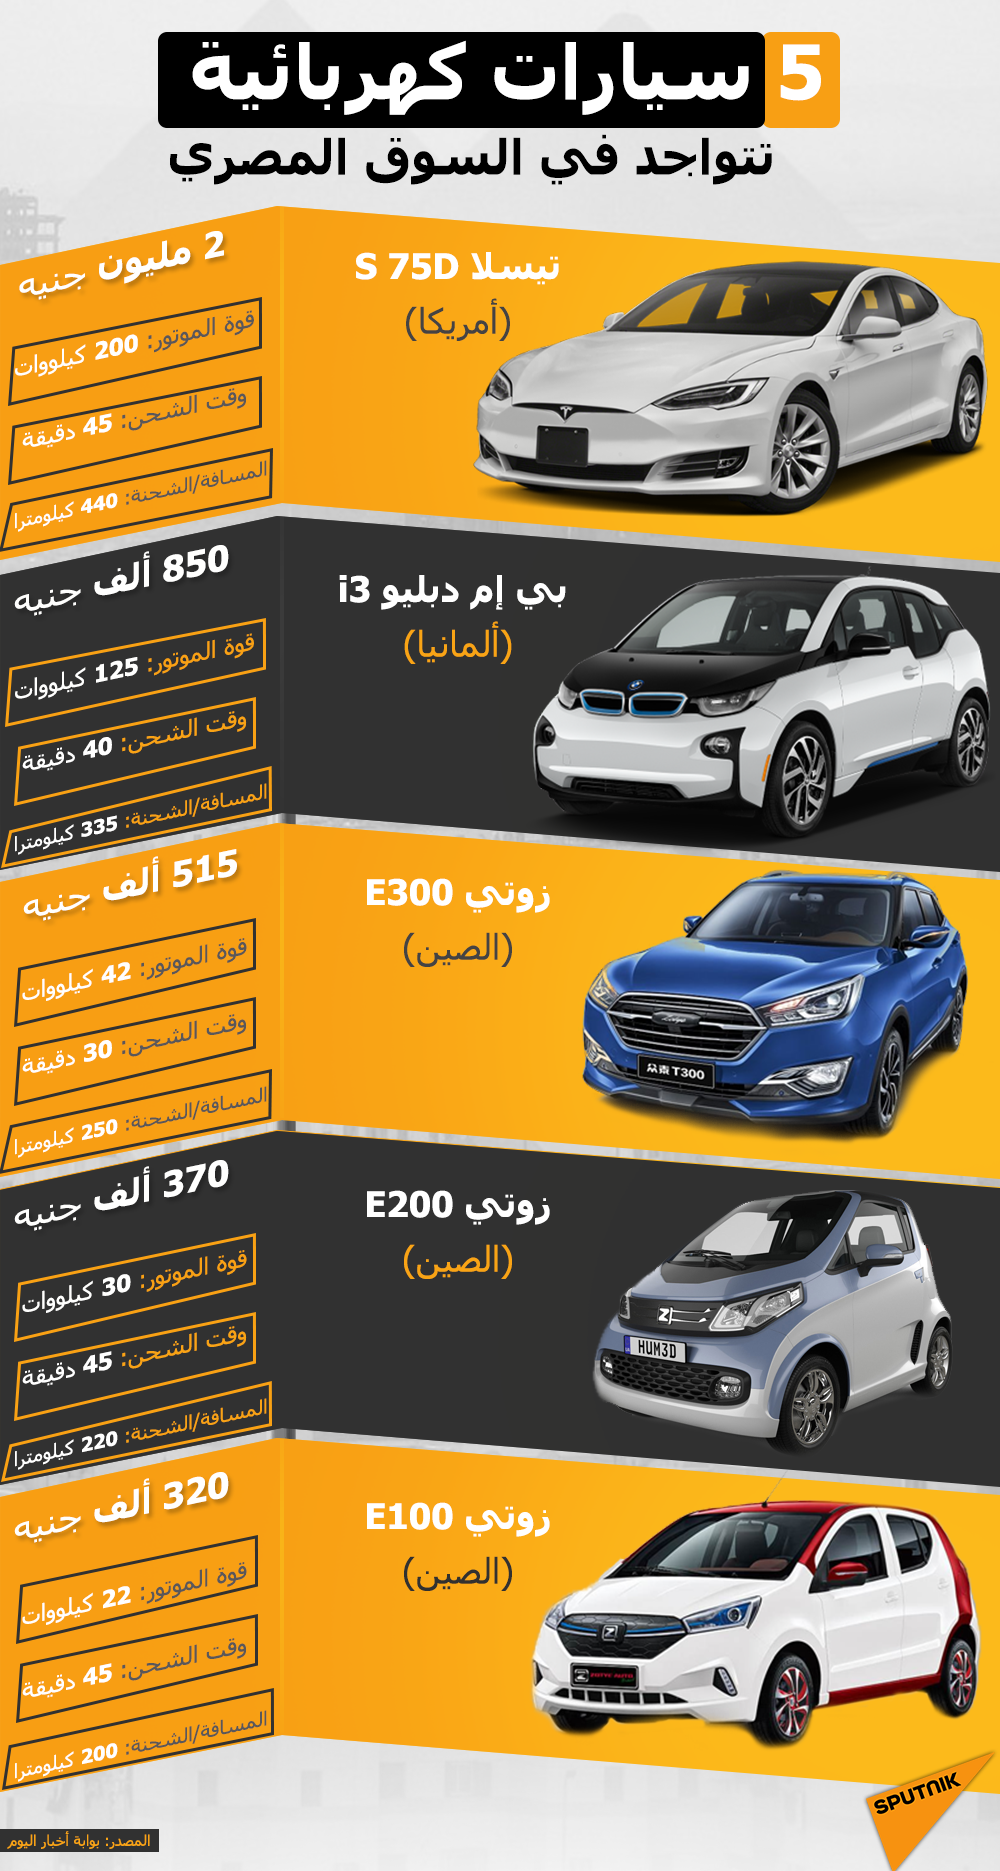 5 سيارات كهربائية تتواجد في السوق المصري - سبوتنيك عربي